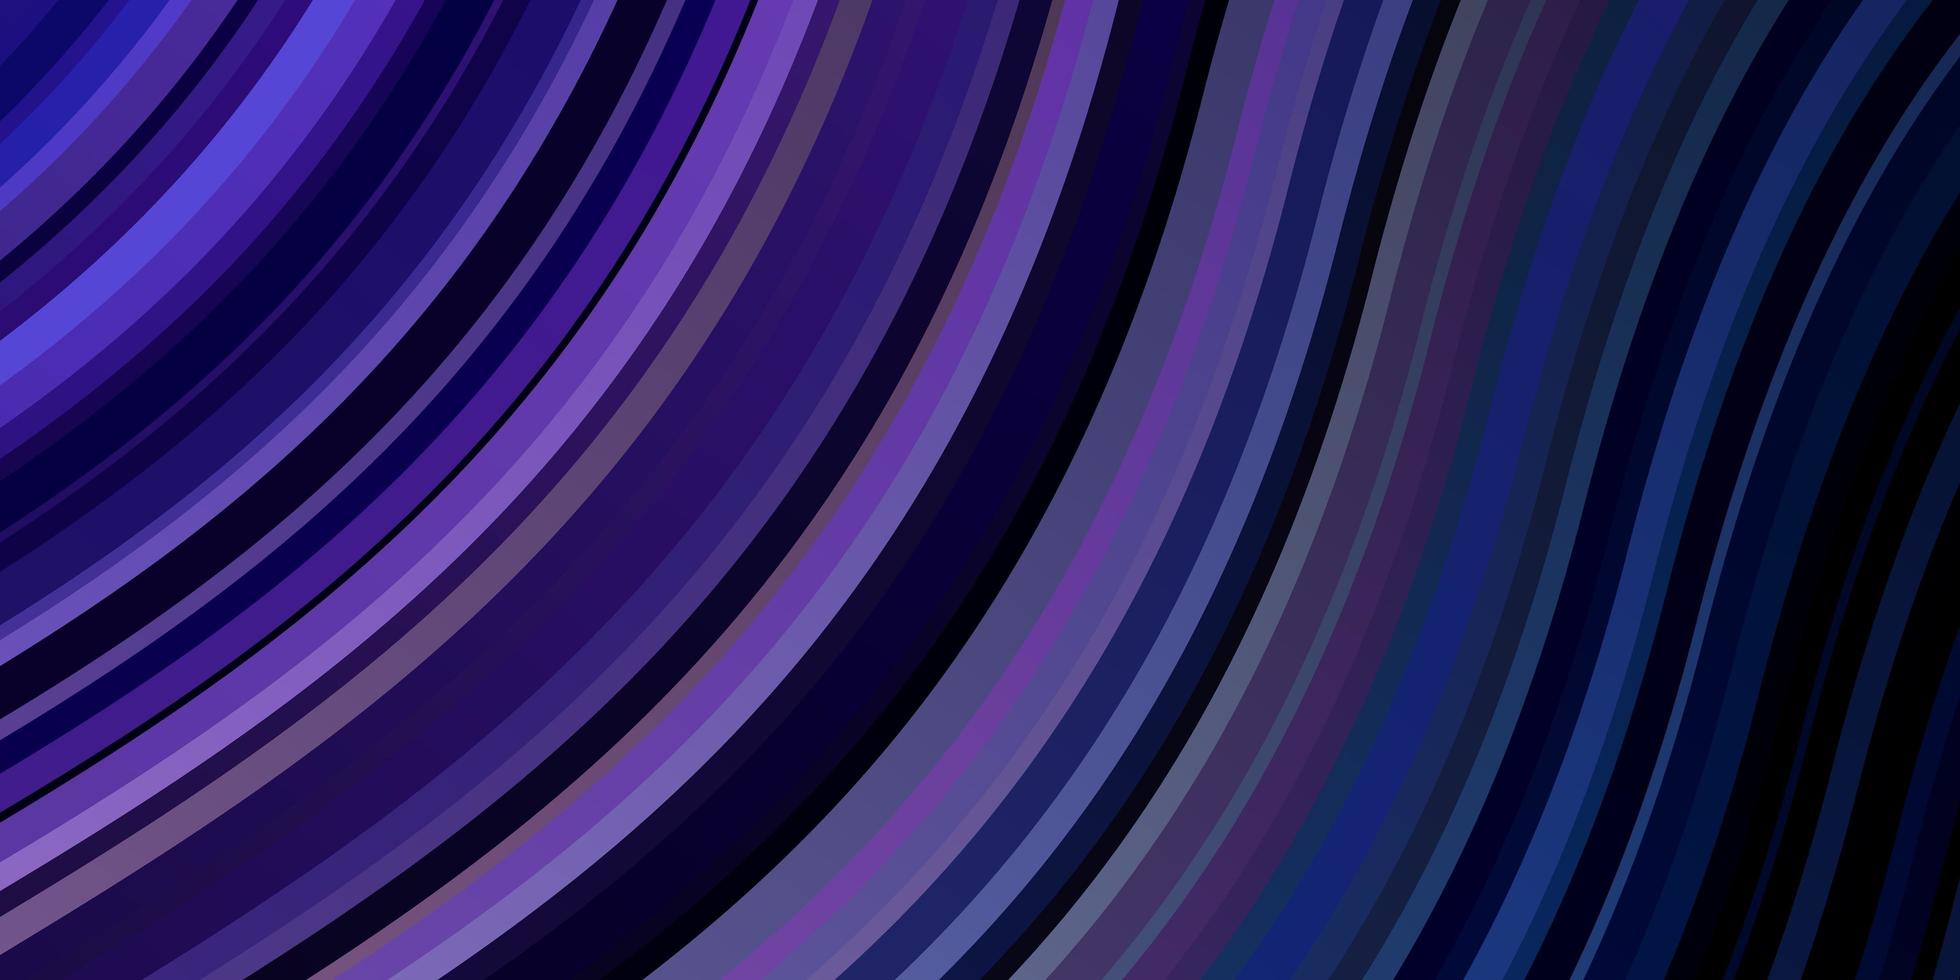 donker roze blauwe vector achtergrond met gebogen lijnen gloednieuwe kleurrijke illustratie met gebogen lijnen slim ontwerp voor uw promoties